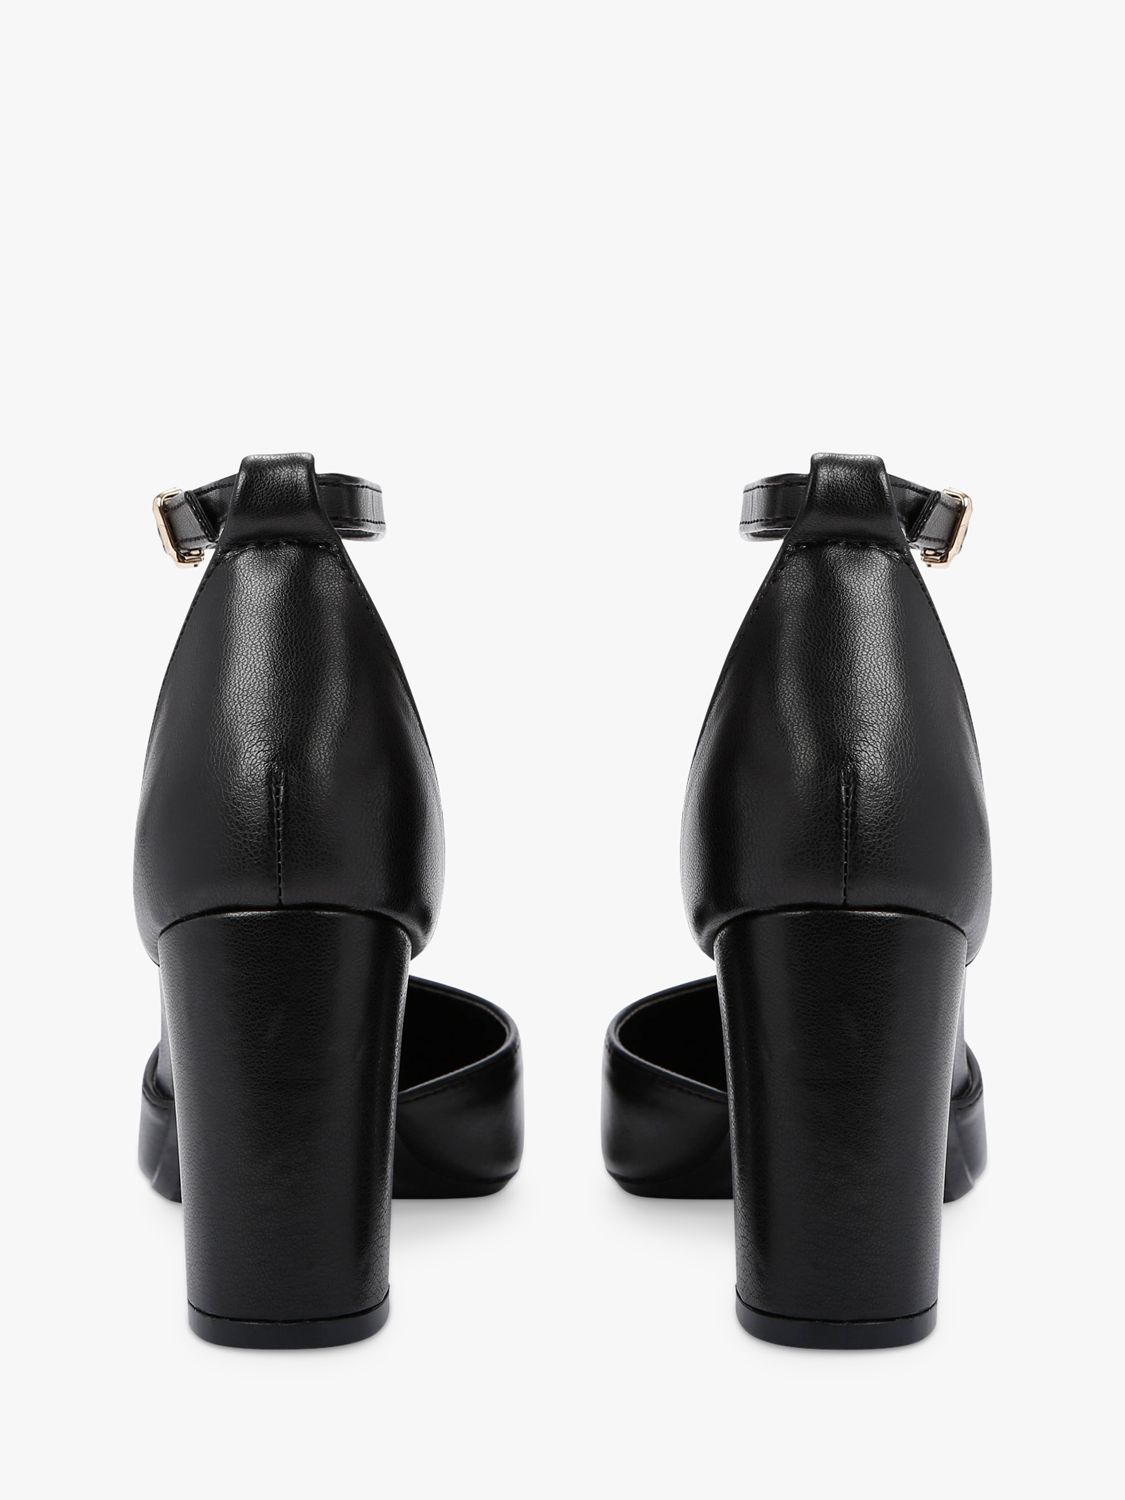 Carvela Refined Court Shoes, Black, 3